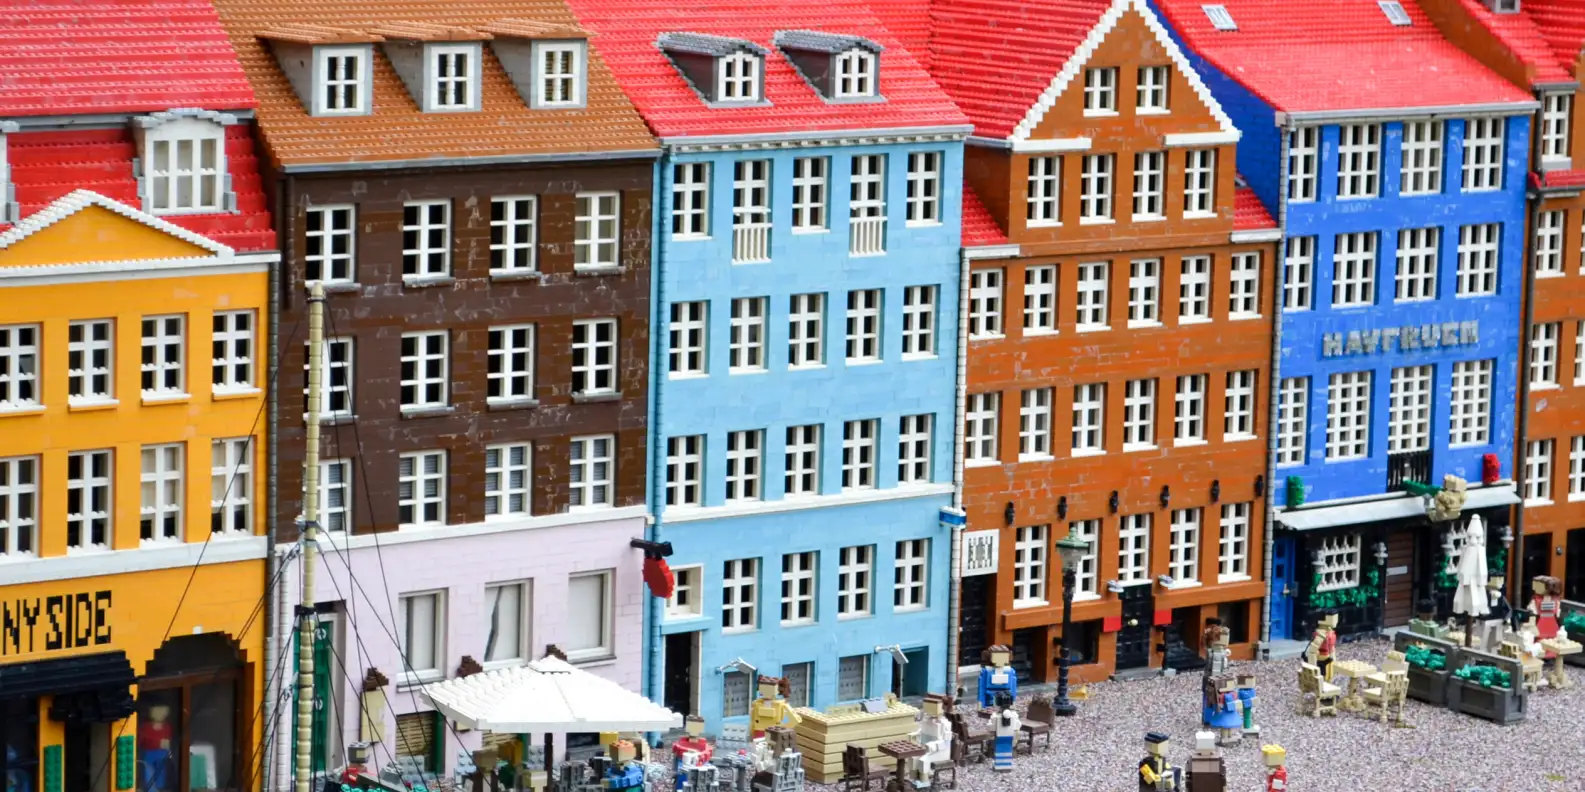 Cómo es la visita al Legoland Discovery Center de Berlín (1)